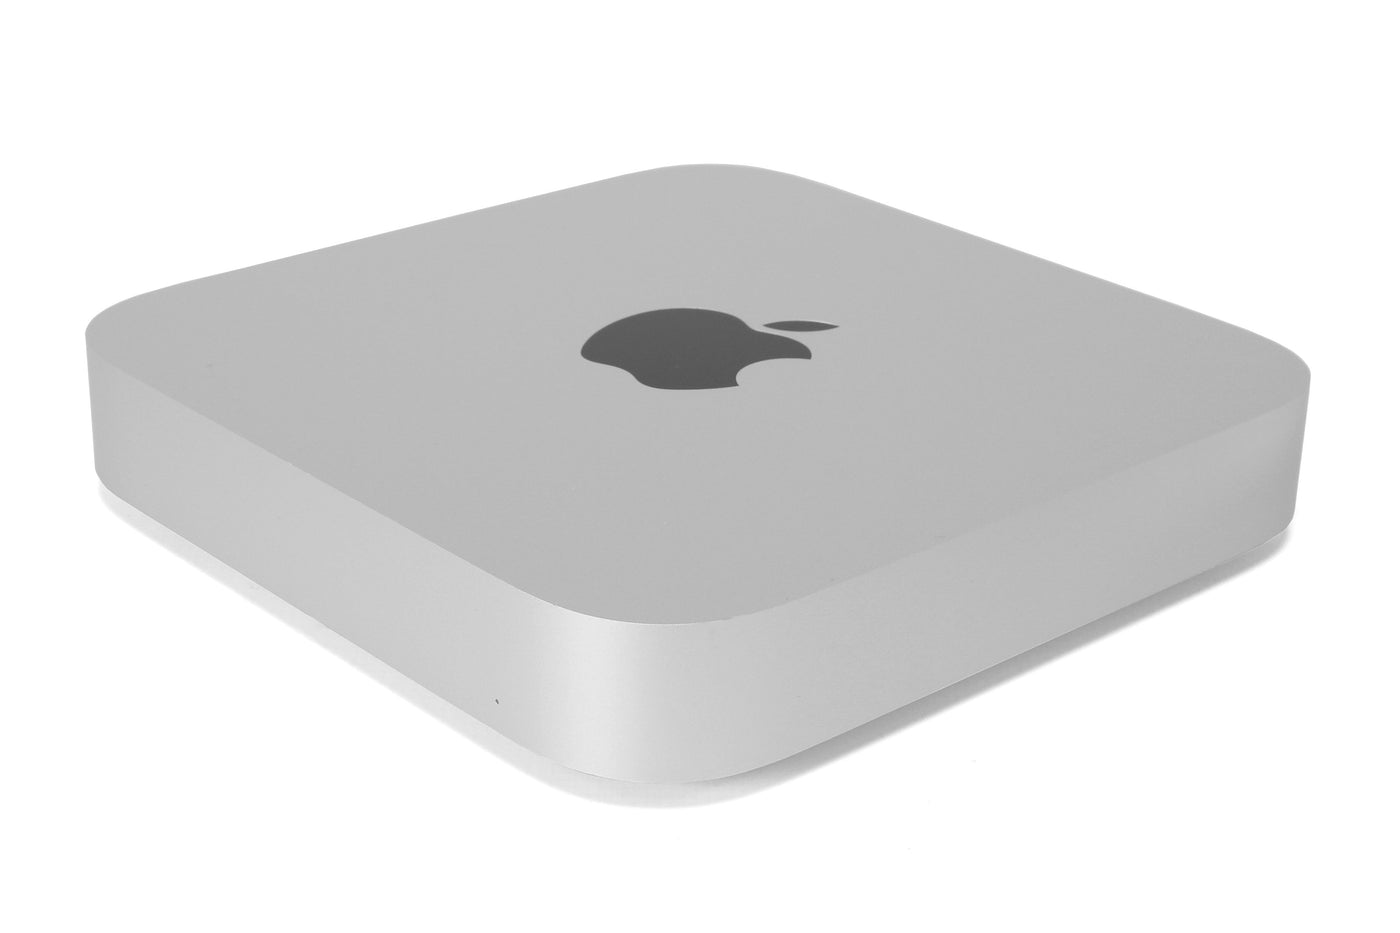 Apple Mac Mini Mac mini M1 (2020) - Good